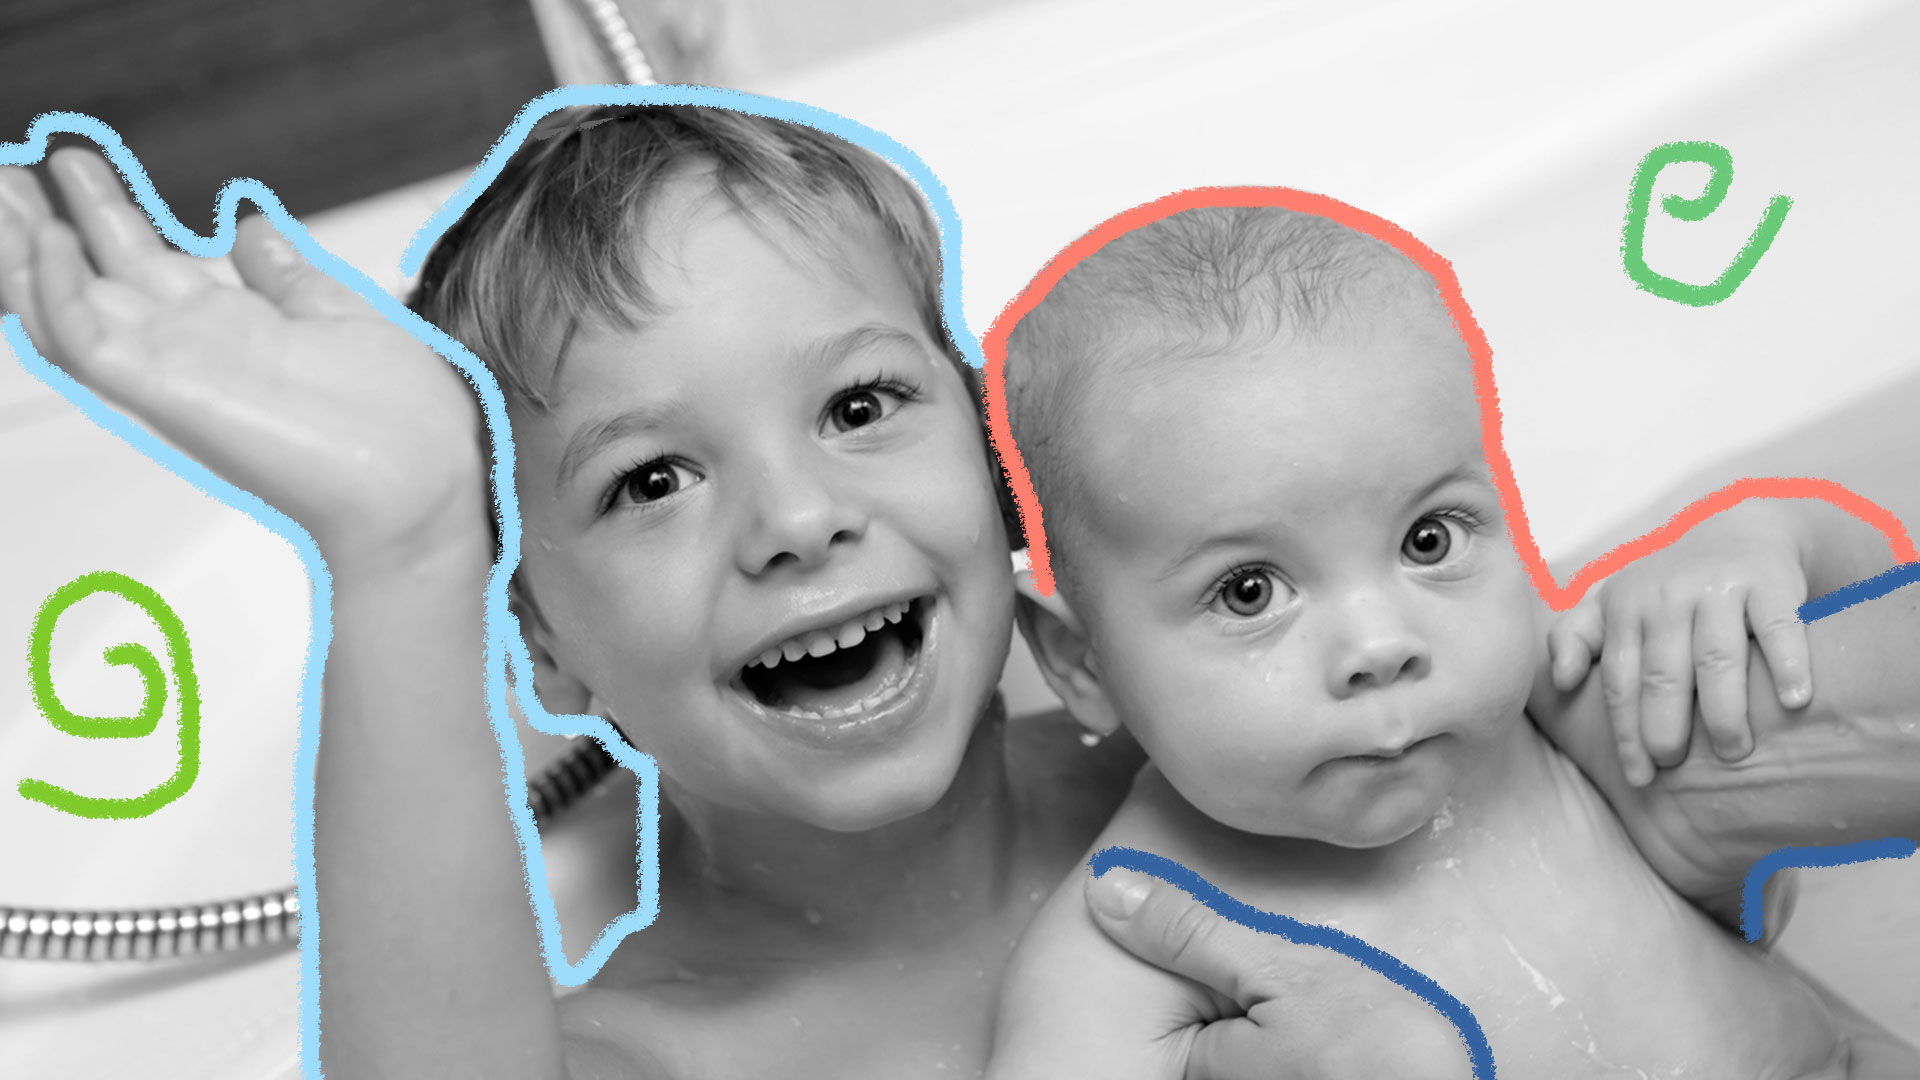 Imagem em preto e branco mostra duas crianças tomando banho juntas. O menino mais velho segura um bebê e acena para a câmera.